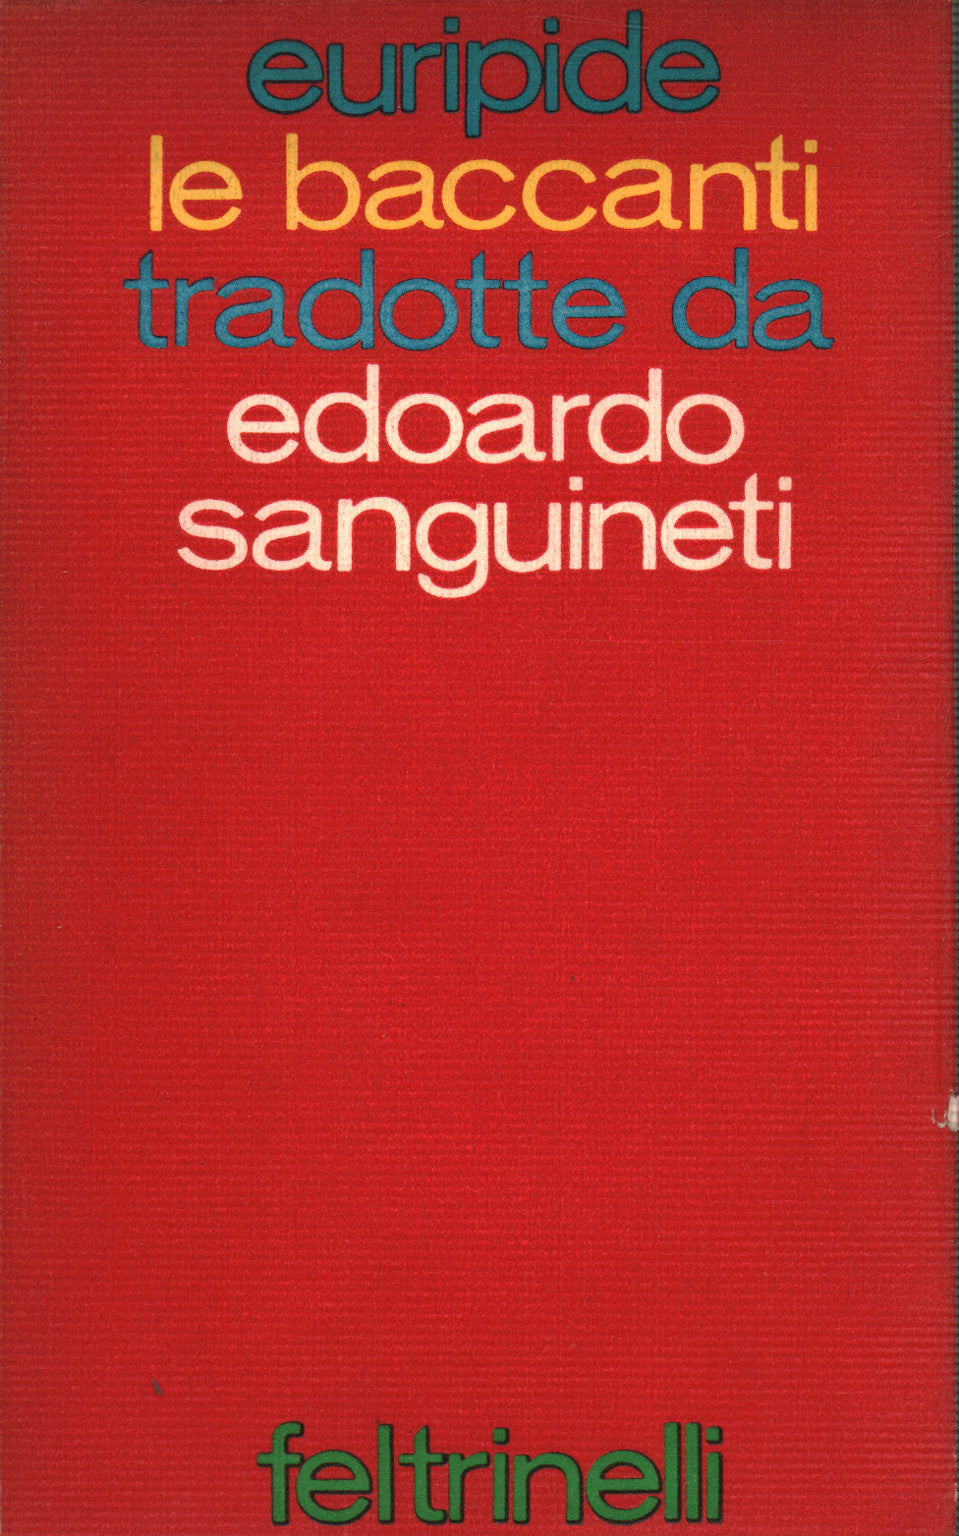 Baccanti (Le) - tradotte da Edoardo Sanguinetti